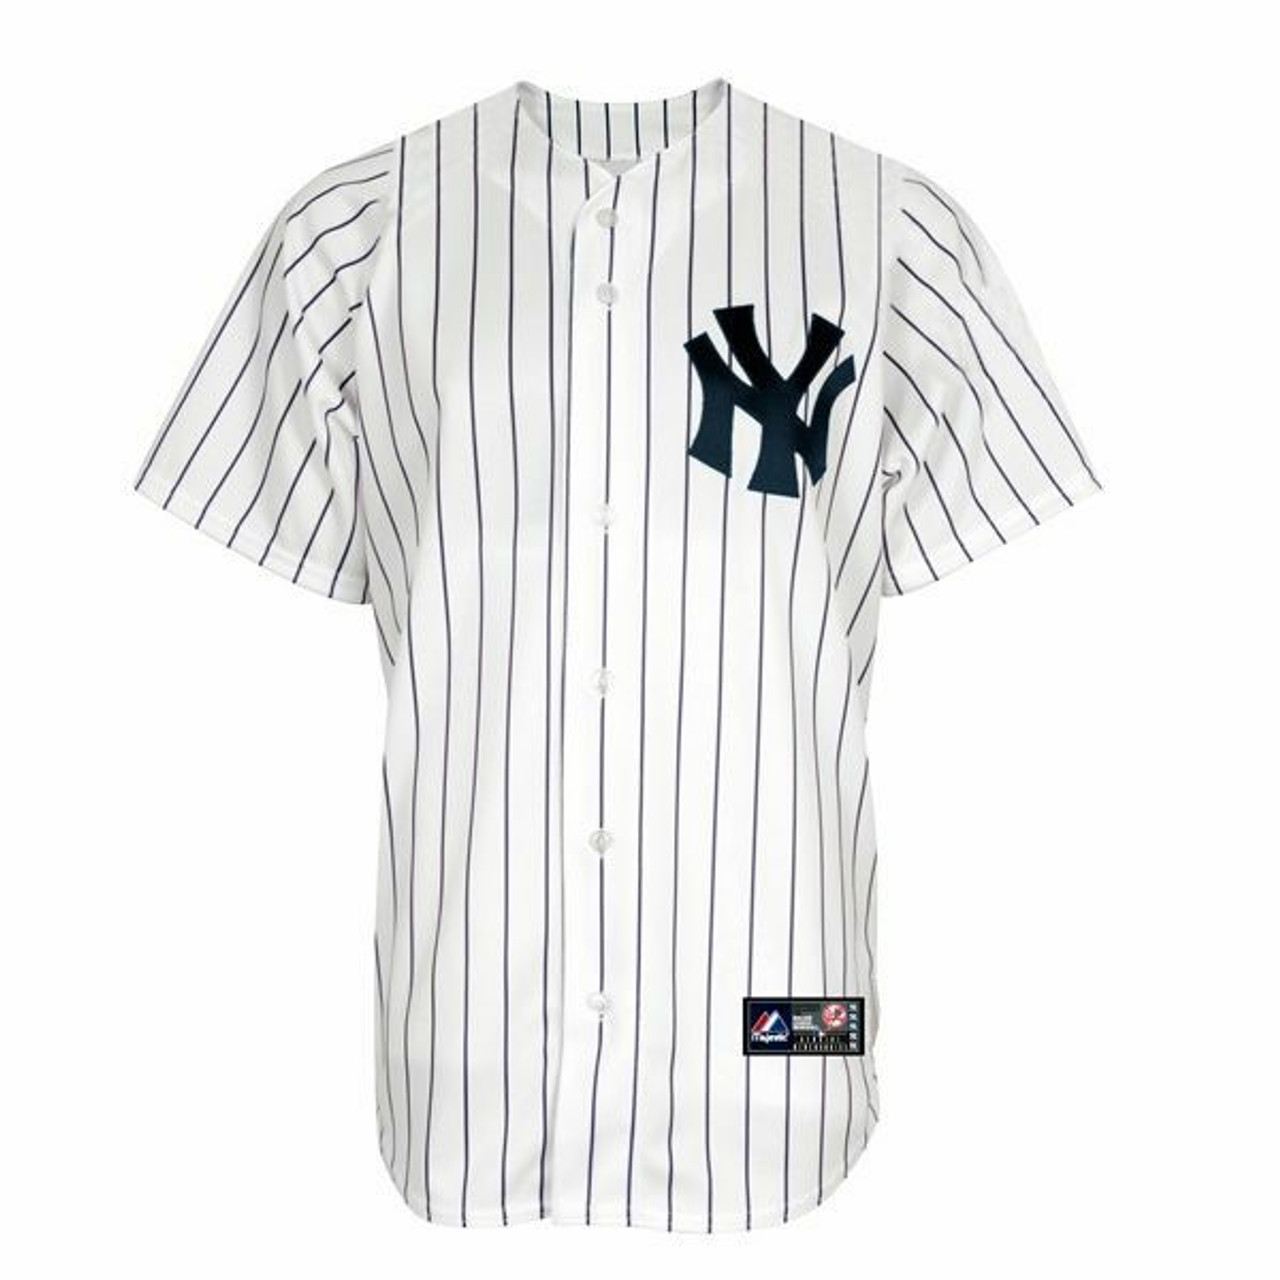 New York Yankees Merchandise, Gifts & Fan Gear - SportsUnlimited.com